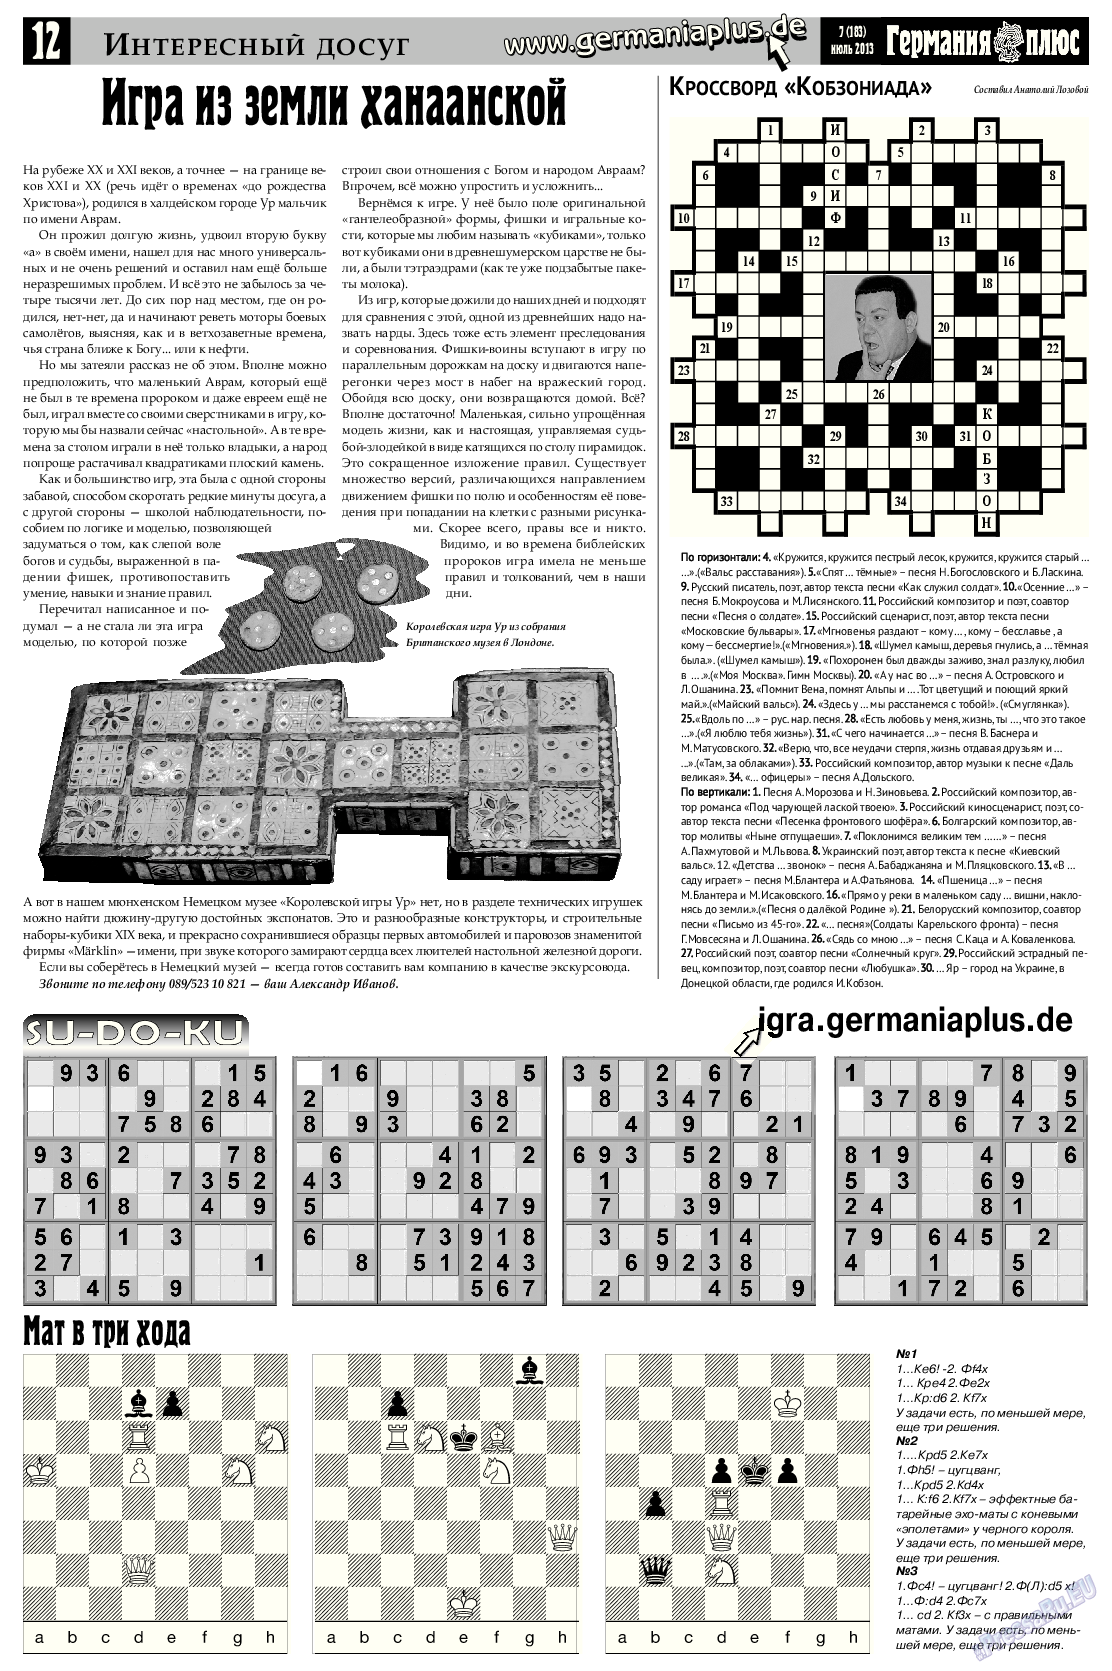 Германия плюс, газета. 2013 №7 стр.12